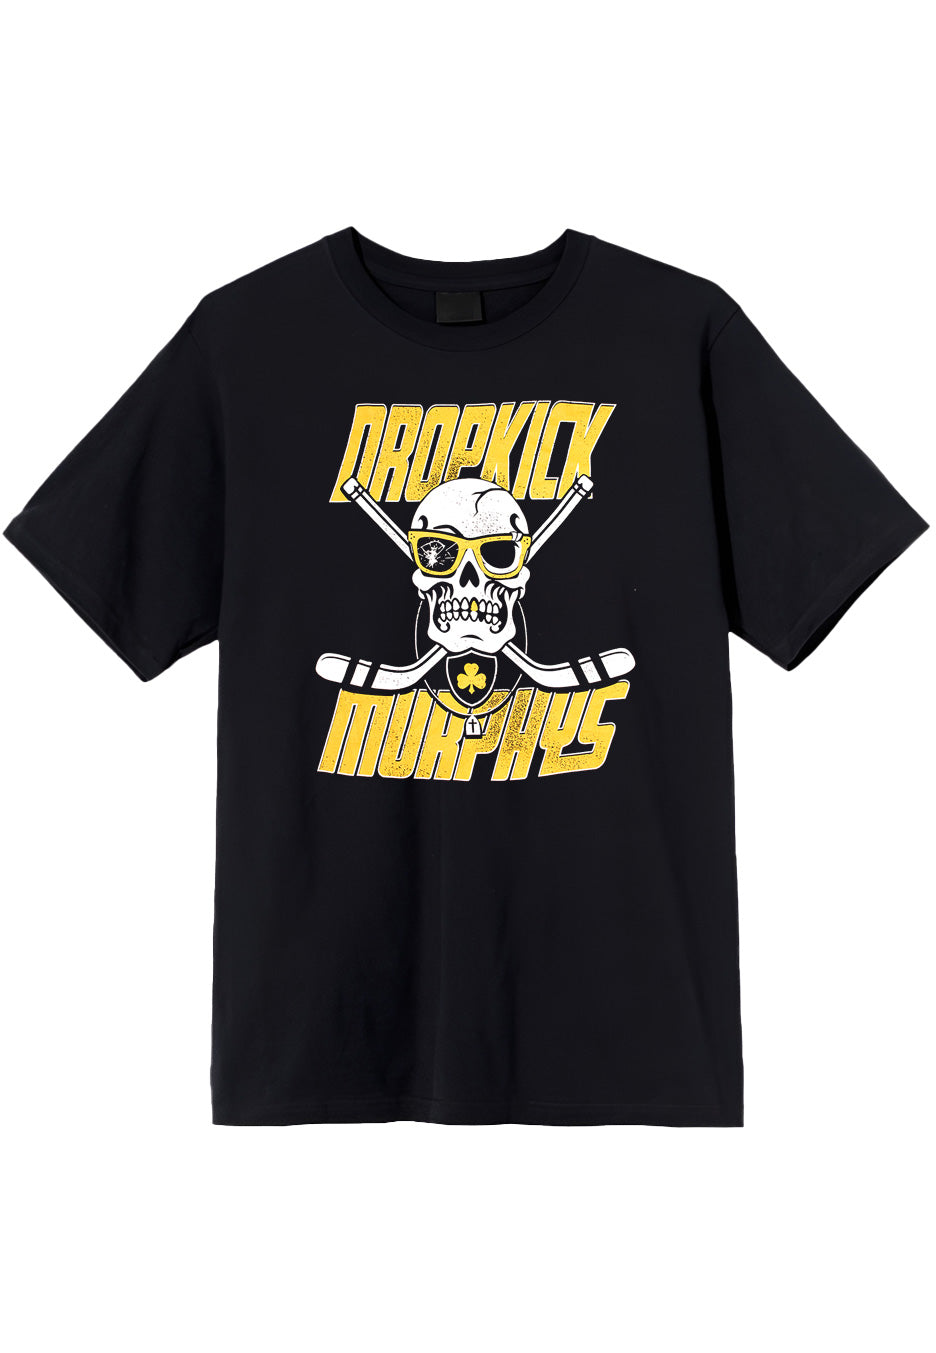 Dropkick Murphys - Slapshot Grunge Black - T-Shirt | Neutral-Image